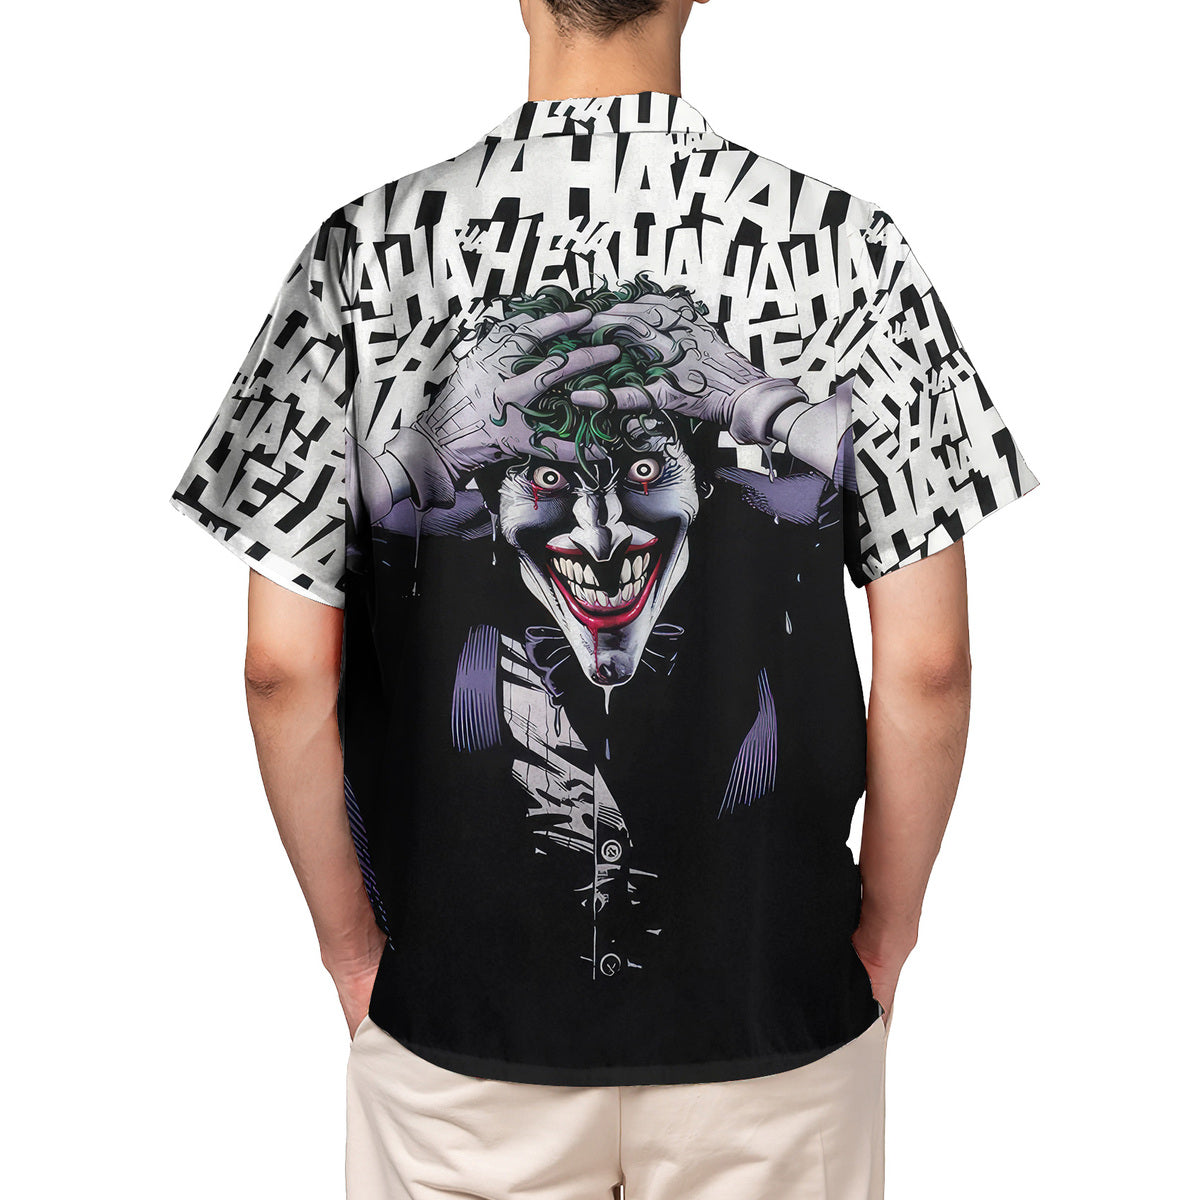 Joker Killing Ha Ha Ha Hawaiian Shirt